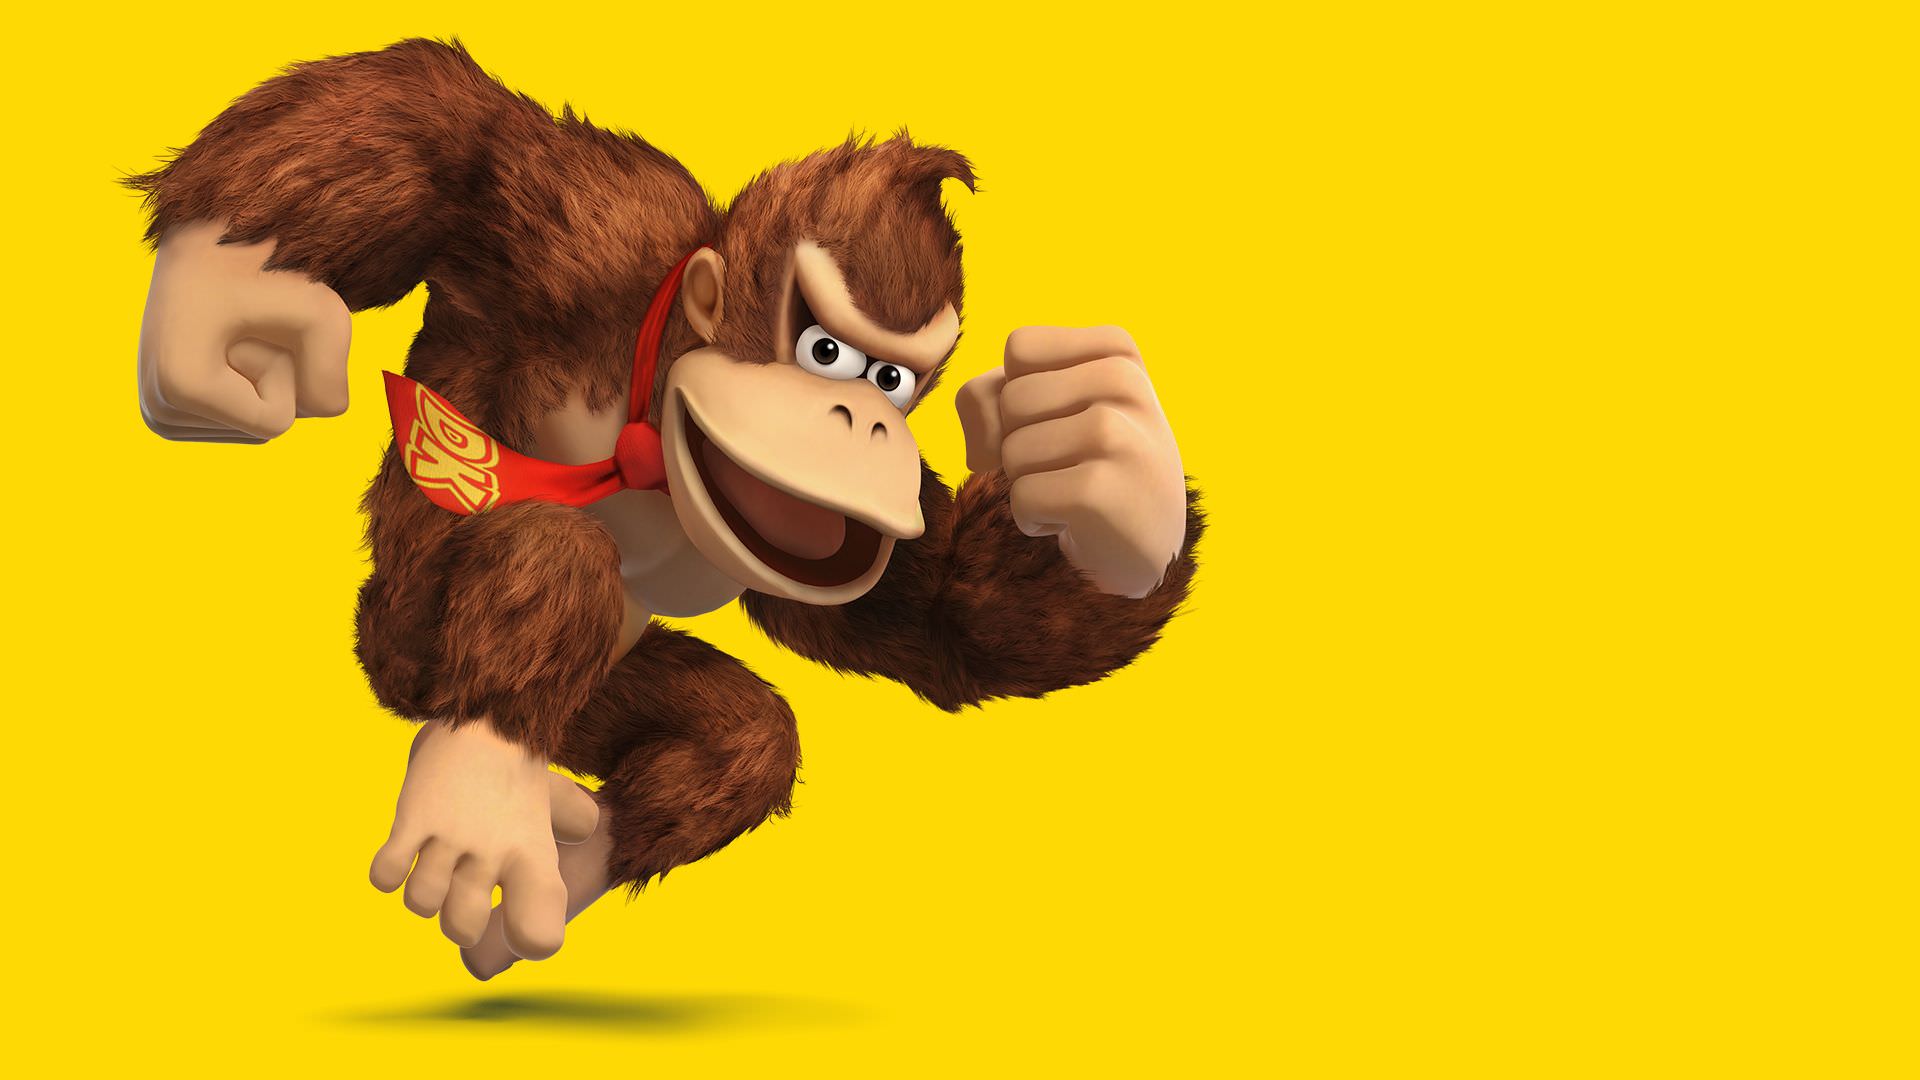 احتمال احیا مجموعه Donkey Kong با ساخت یک بازی و انیمیشن جدید